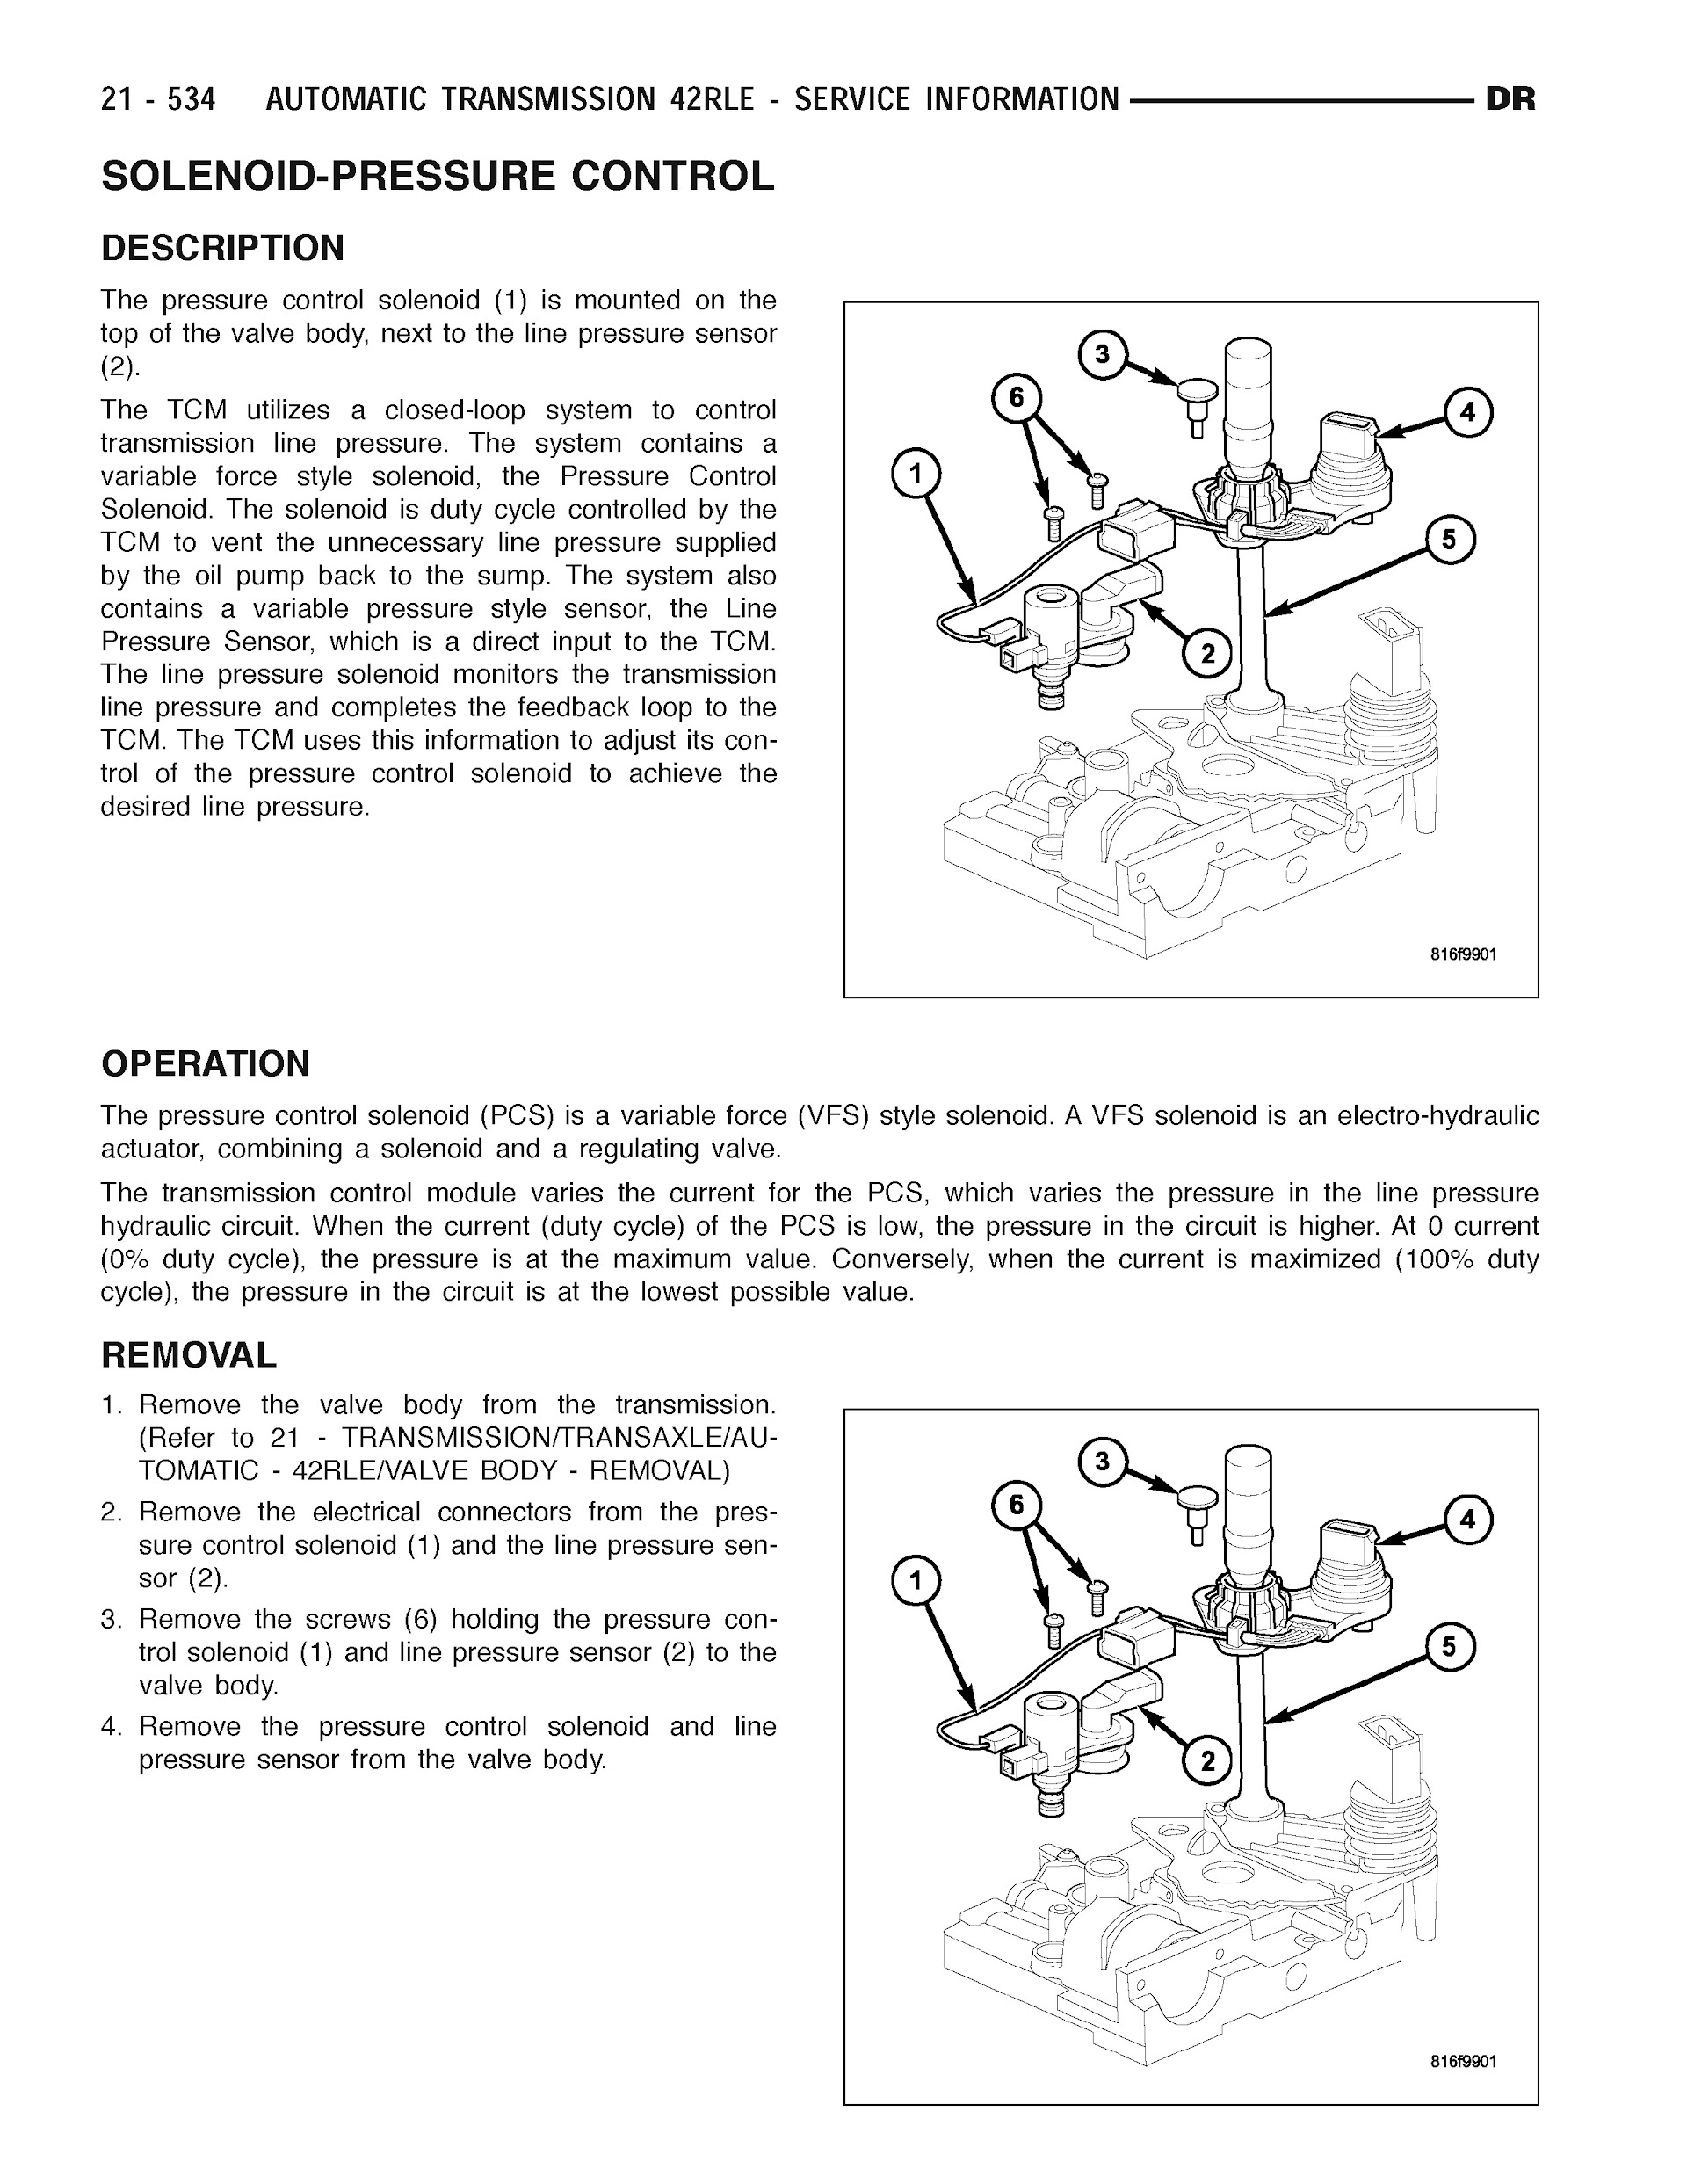 2006 Dodge RAM Truck Repair Manual, Automatic Transmission 42RLE